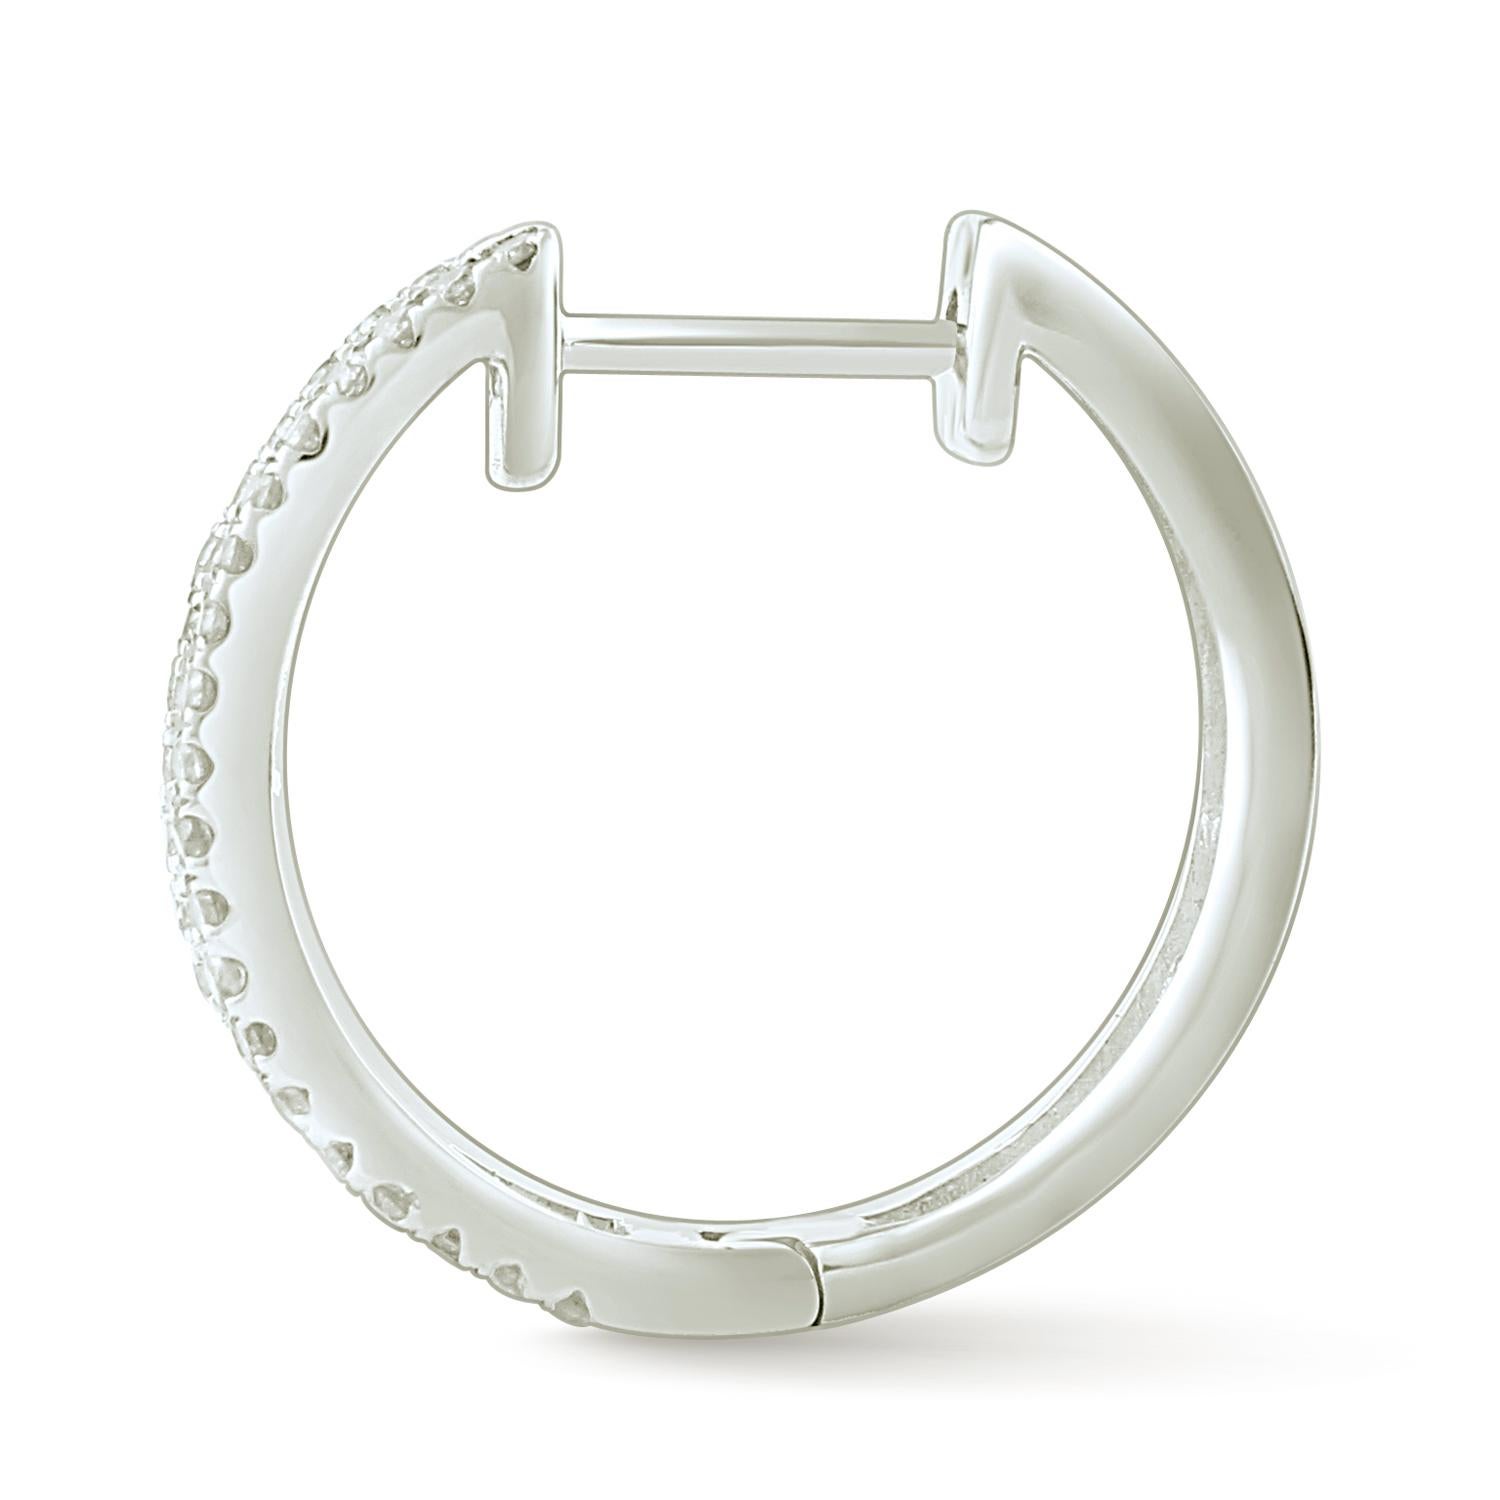 Round Cut 1.00 Carat Princess/Round Certified Diamond Hoop Earring in 14 Karat White Gold